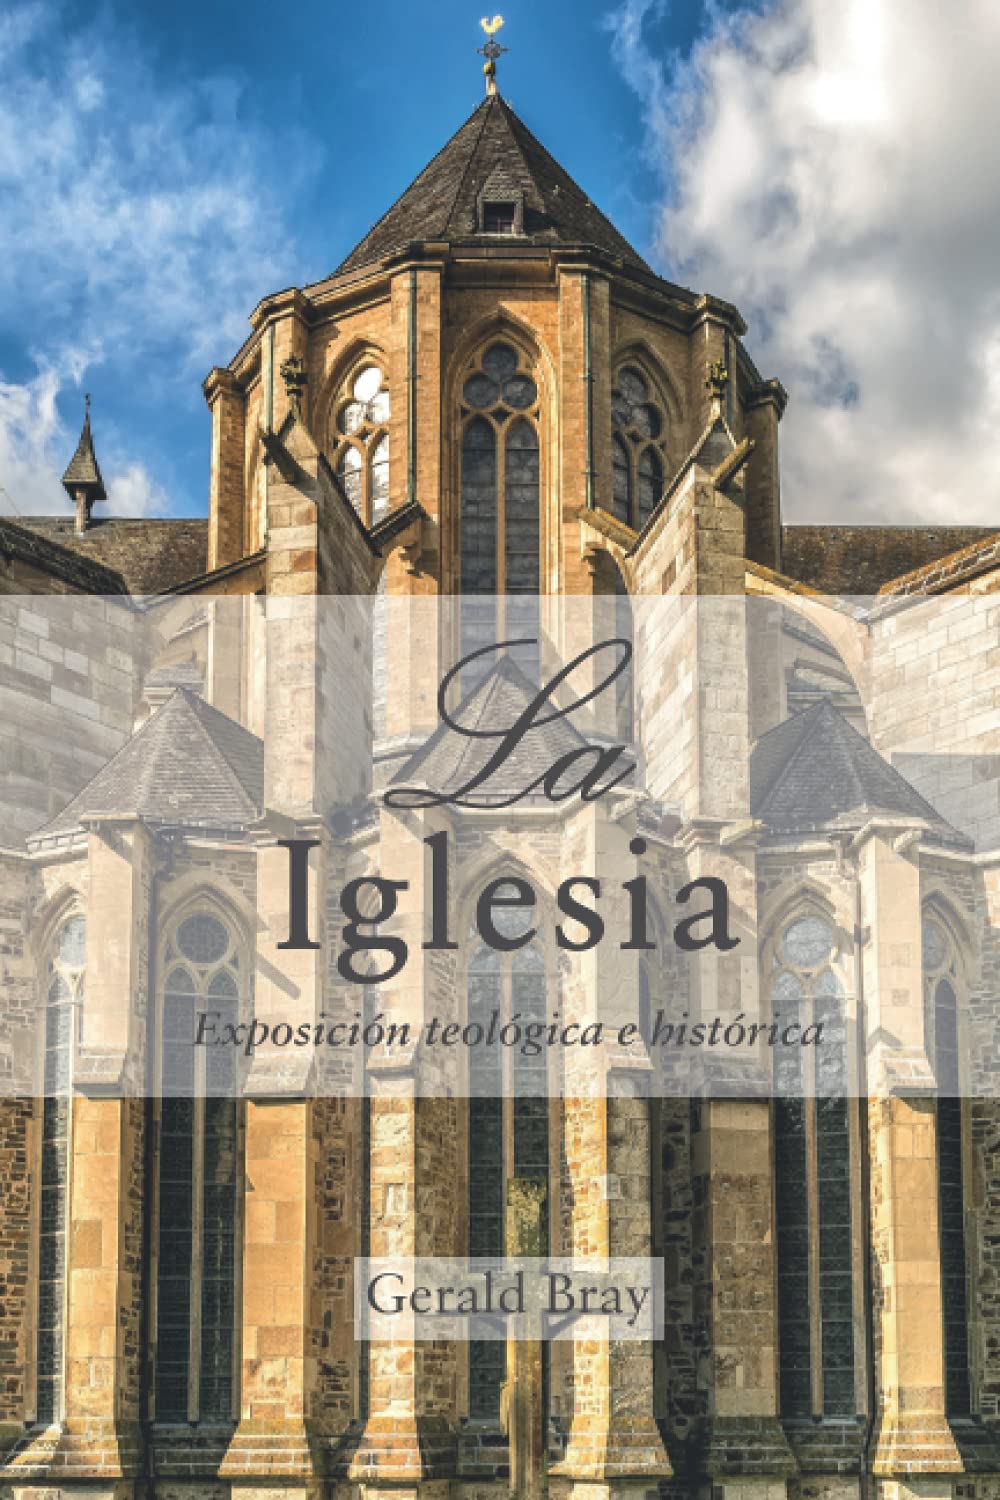 Iglesia/Exposicion Teologica E Historica